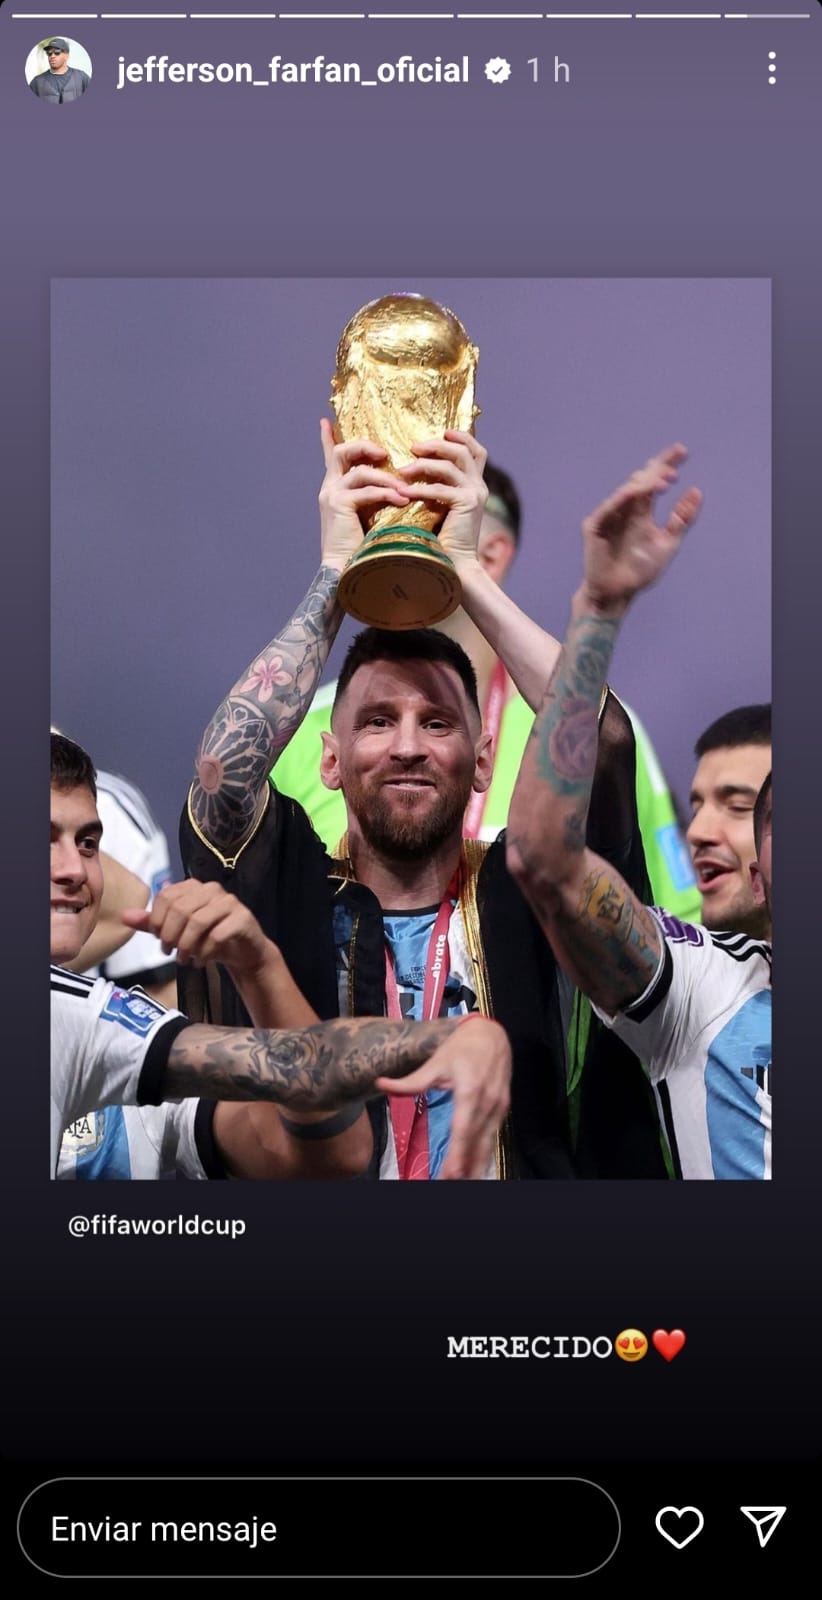 El mensaje de Farfán a Messi tras salir campeón del mundo con Argentina. (Imagen: Captura de Instagram)